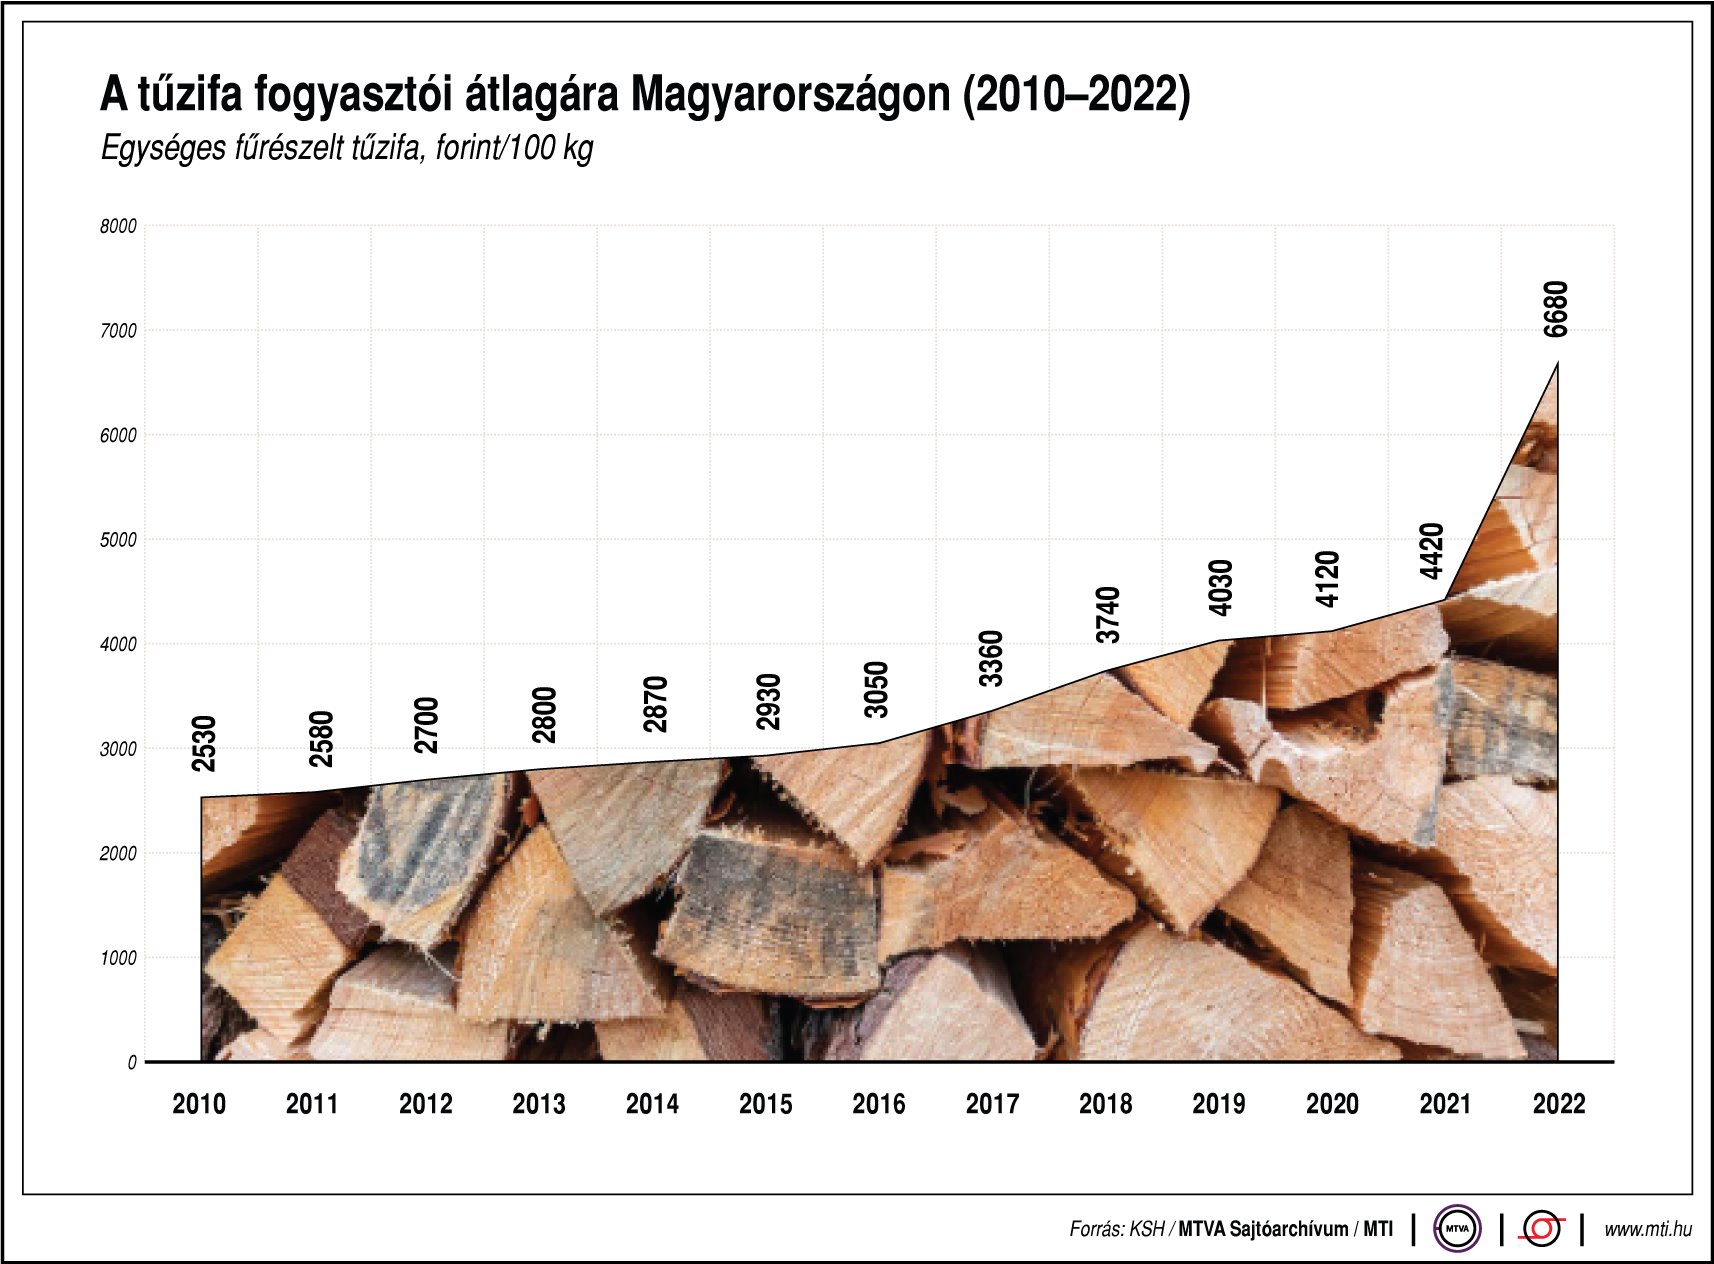 A tűzifa fogyasztói átlagára Magyarországon (2010-2022)